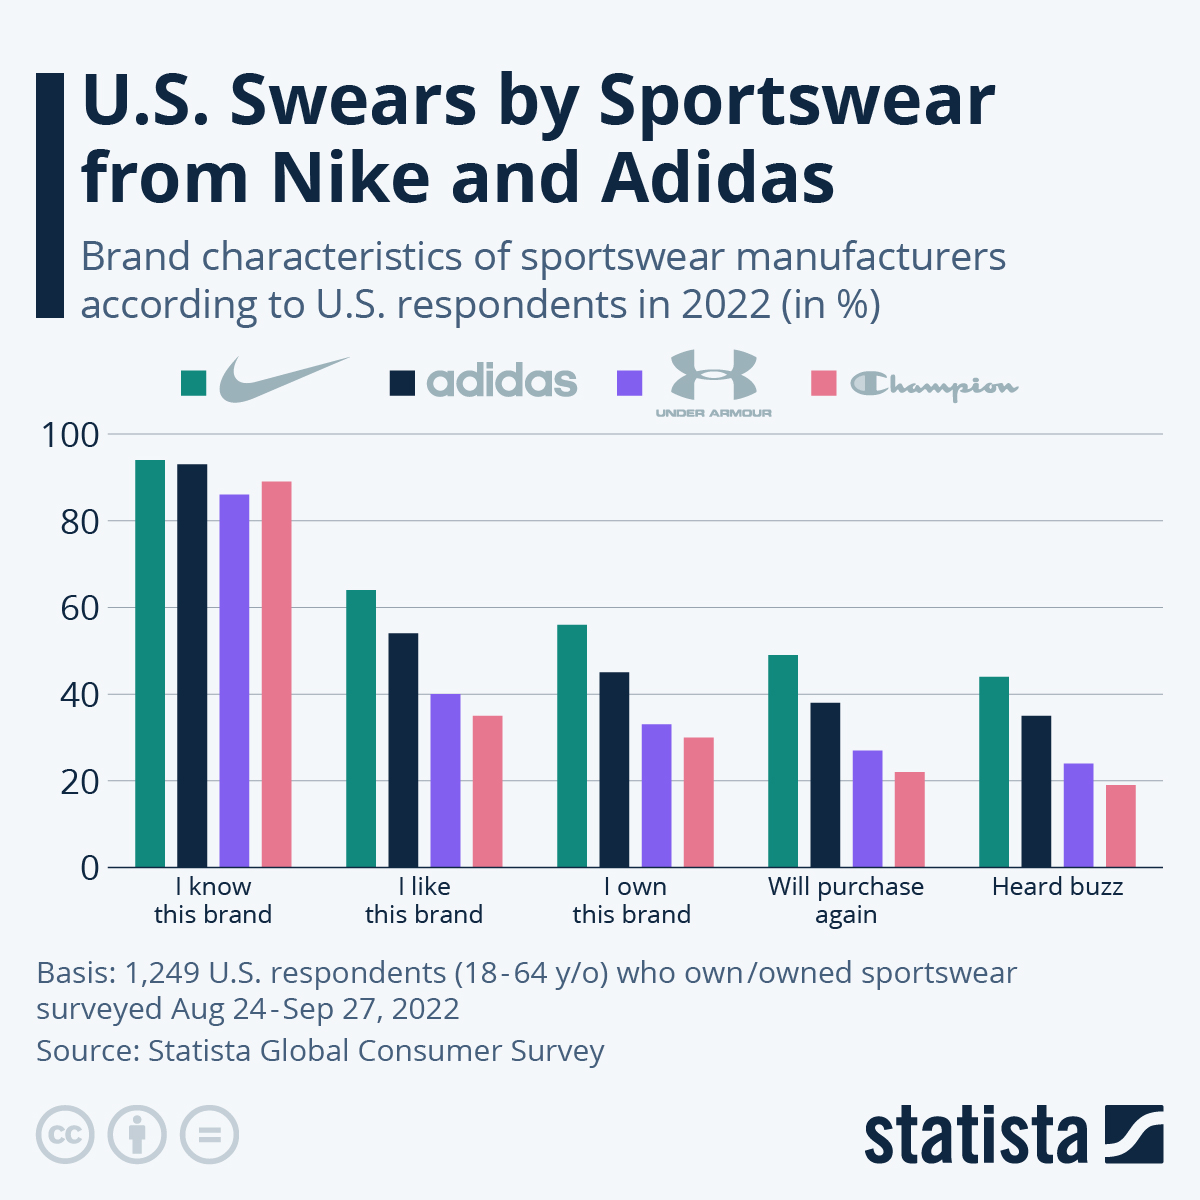 U.S. swears by sportswear from Nike and Adidas